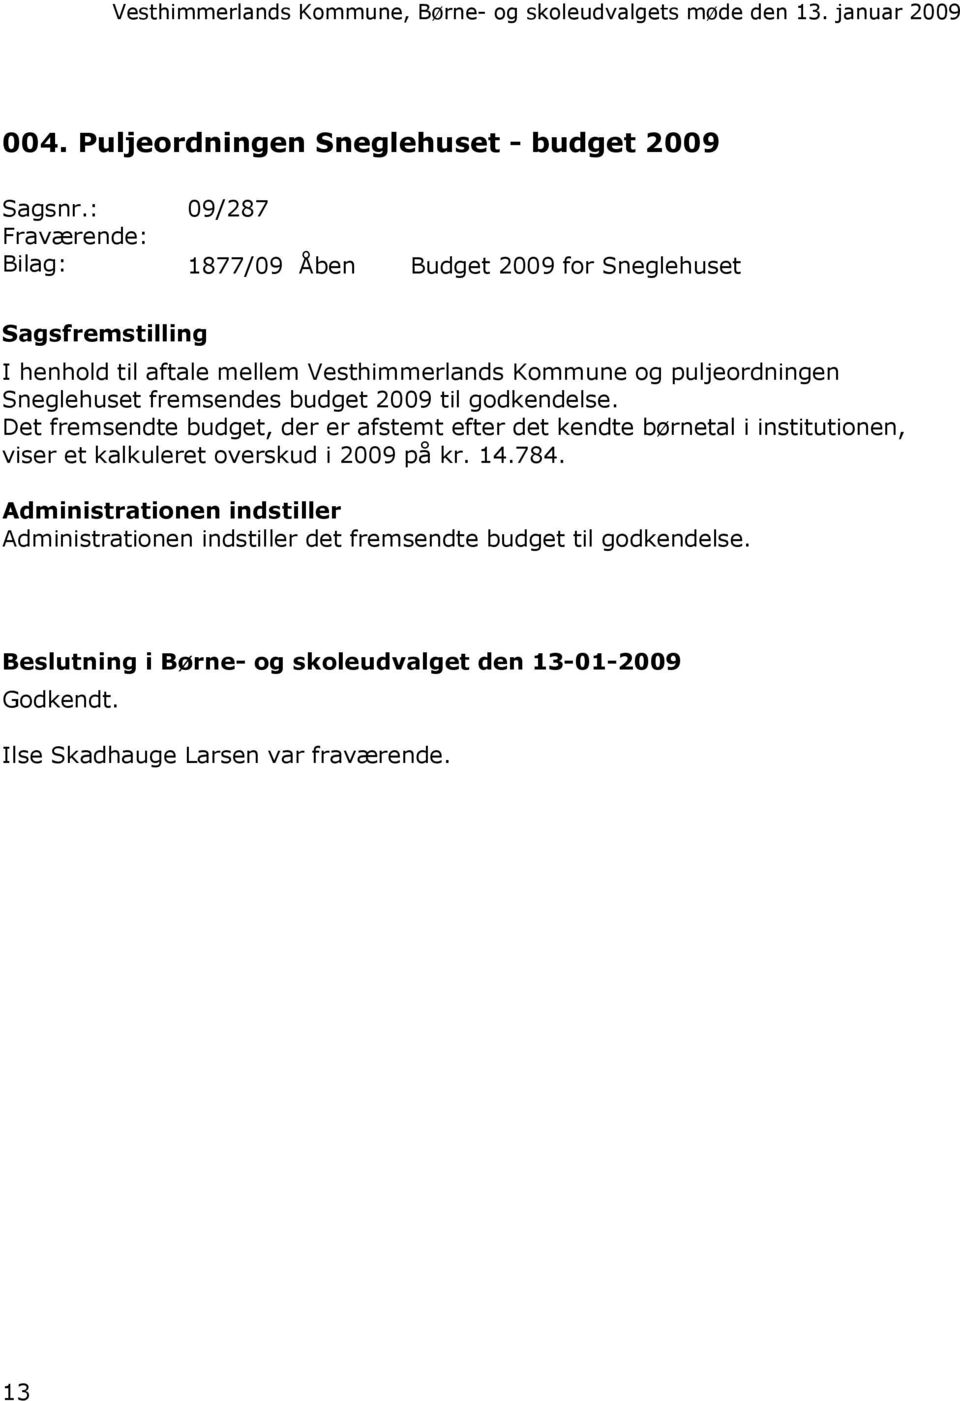 puljeordningen Sneglehuset fremsendes budget 2009 til godkendelse.